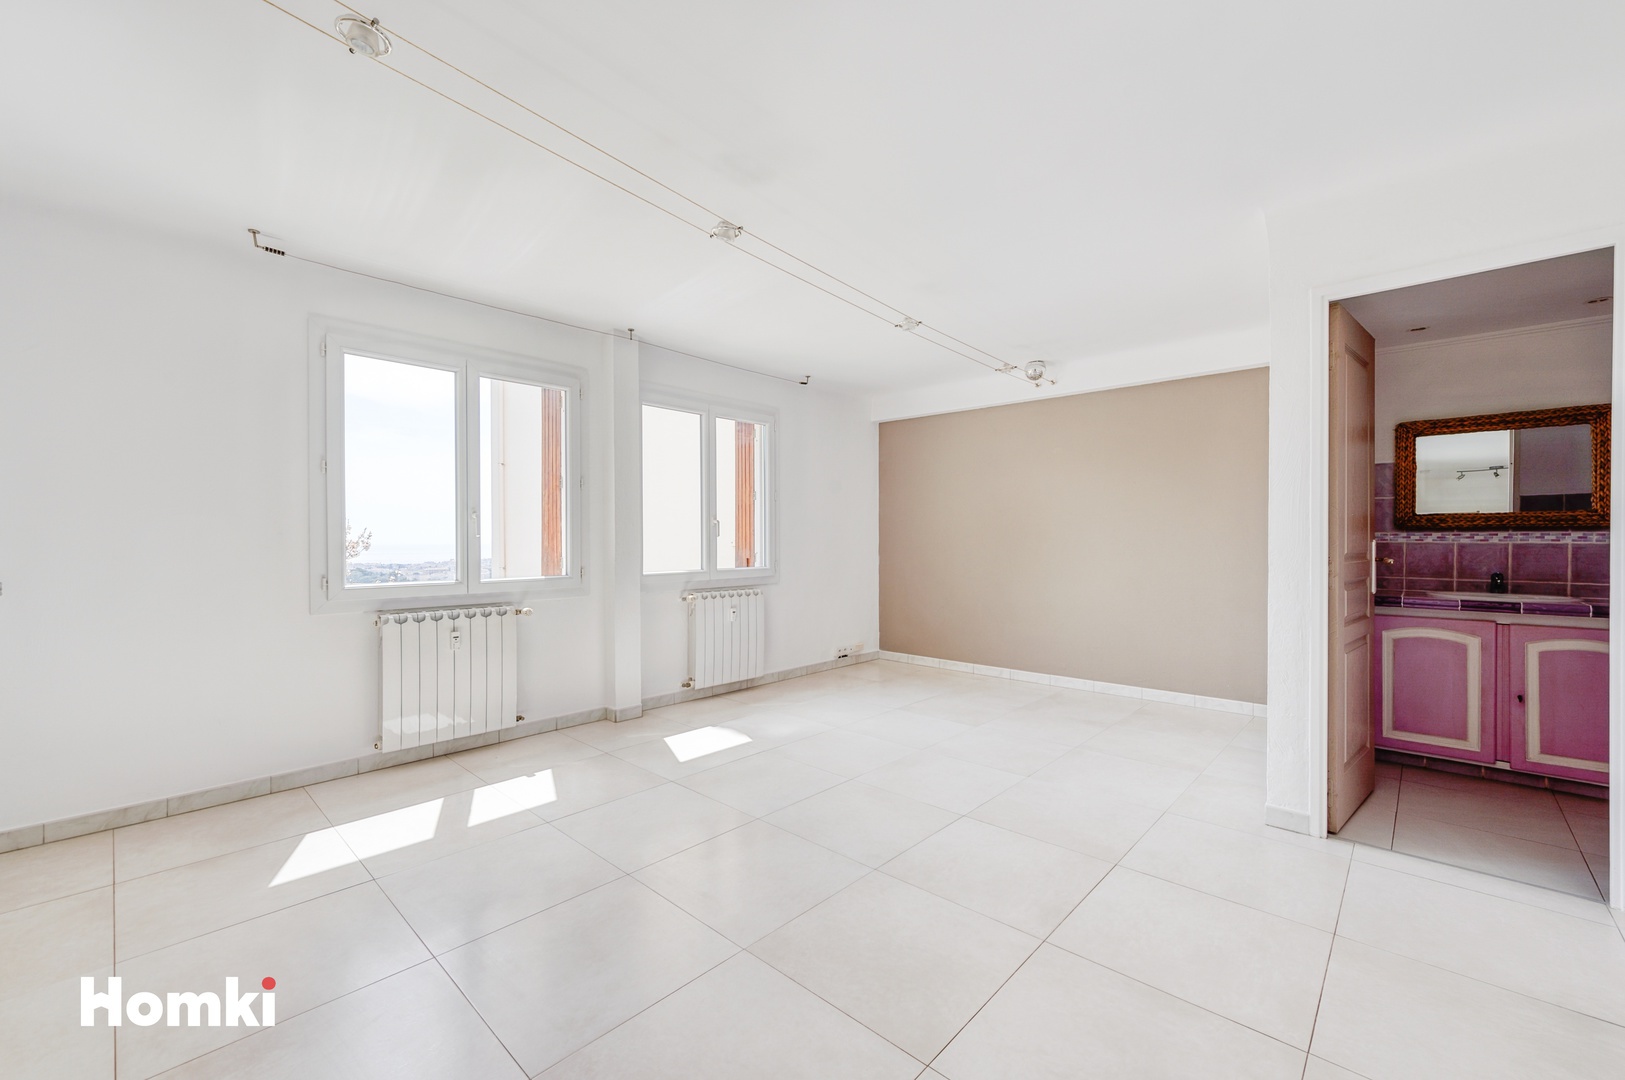 Homki - Vente Appartement  de 52.0 m² à Le cannet 06110